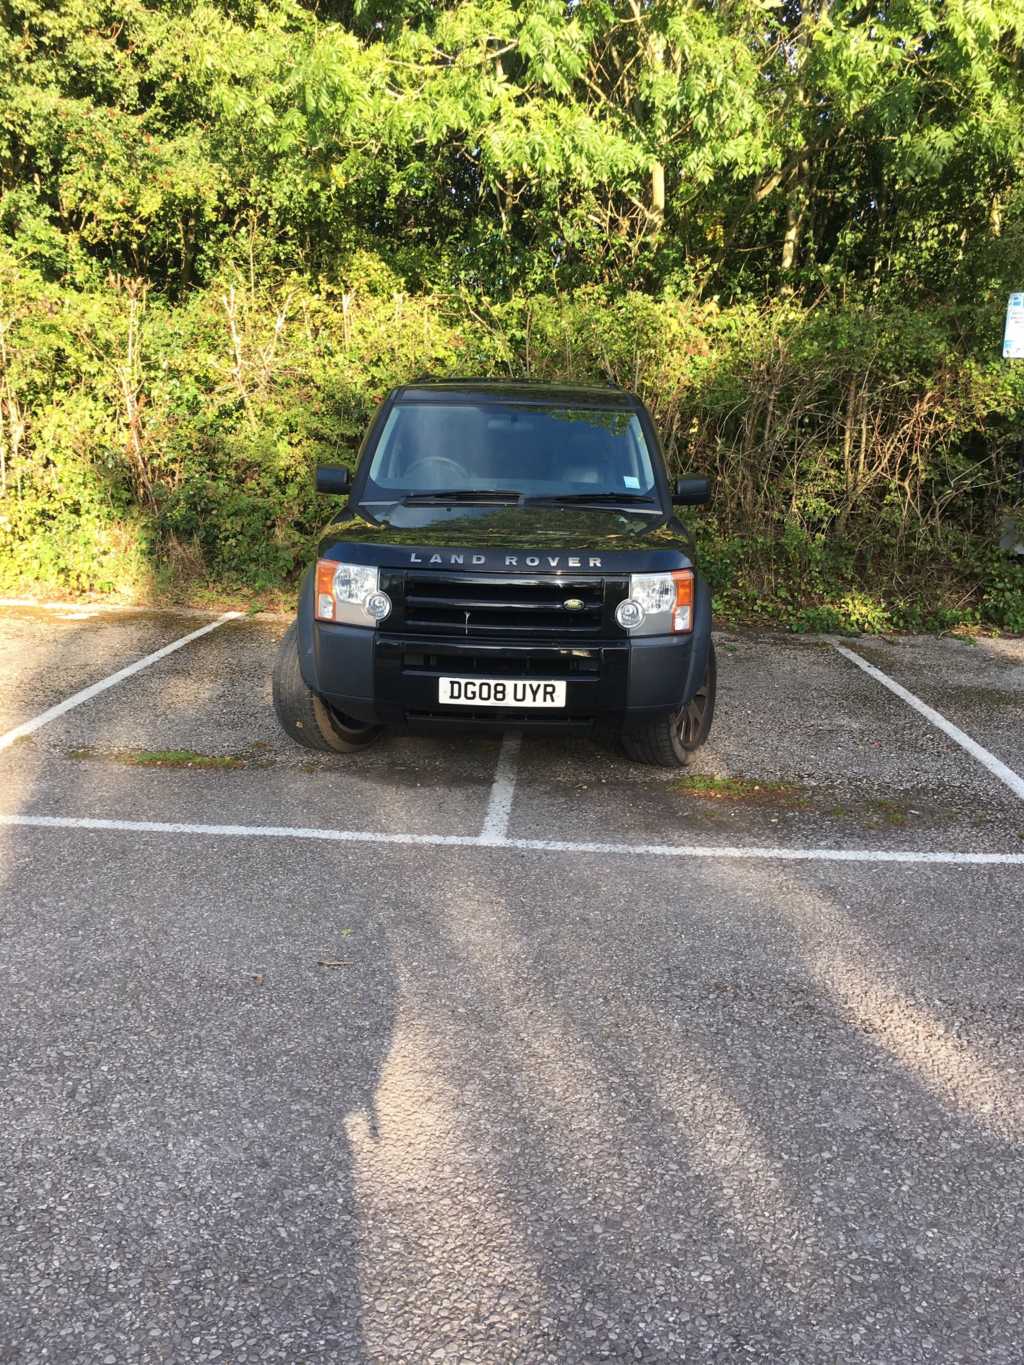 DG08 UYR displaying Selfish Parking